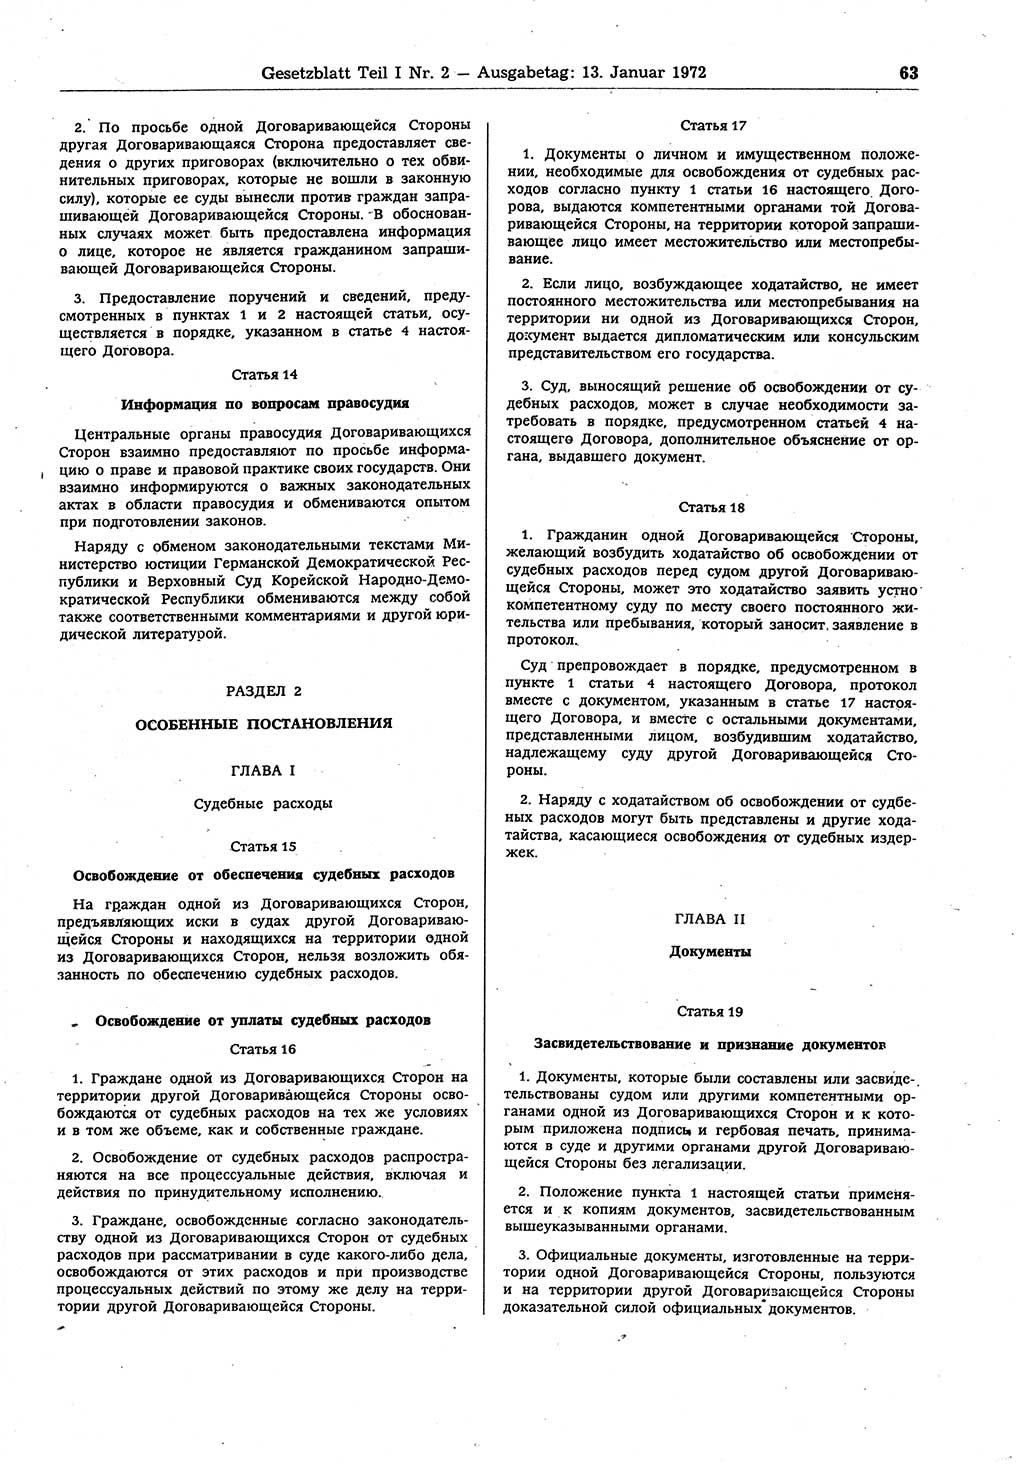 Gesetzblatt (GBl.) der Deutschen Demokratischen Republik (DDR) Teil Ⅰ 1972, Seite 63 (GBl. DDR Ⅰ 1972, S. 63)